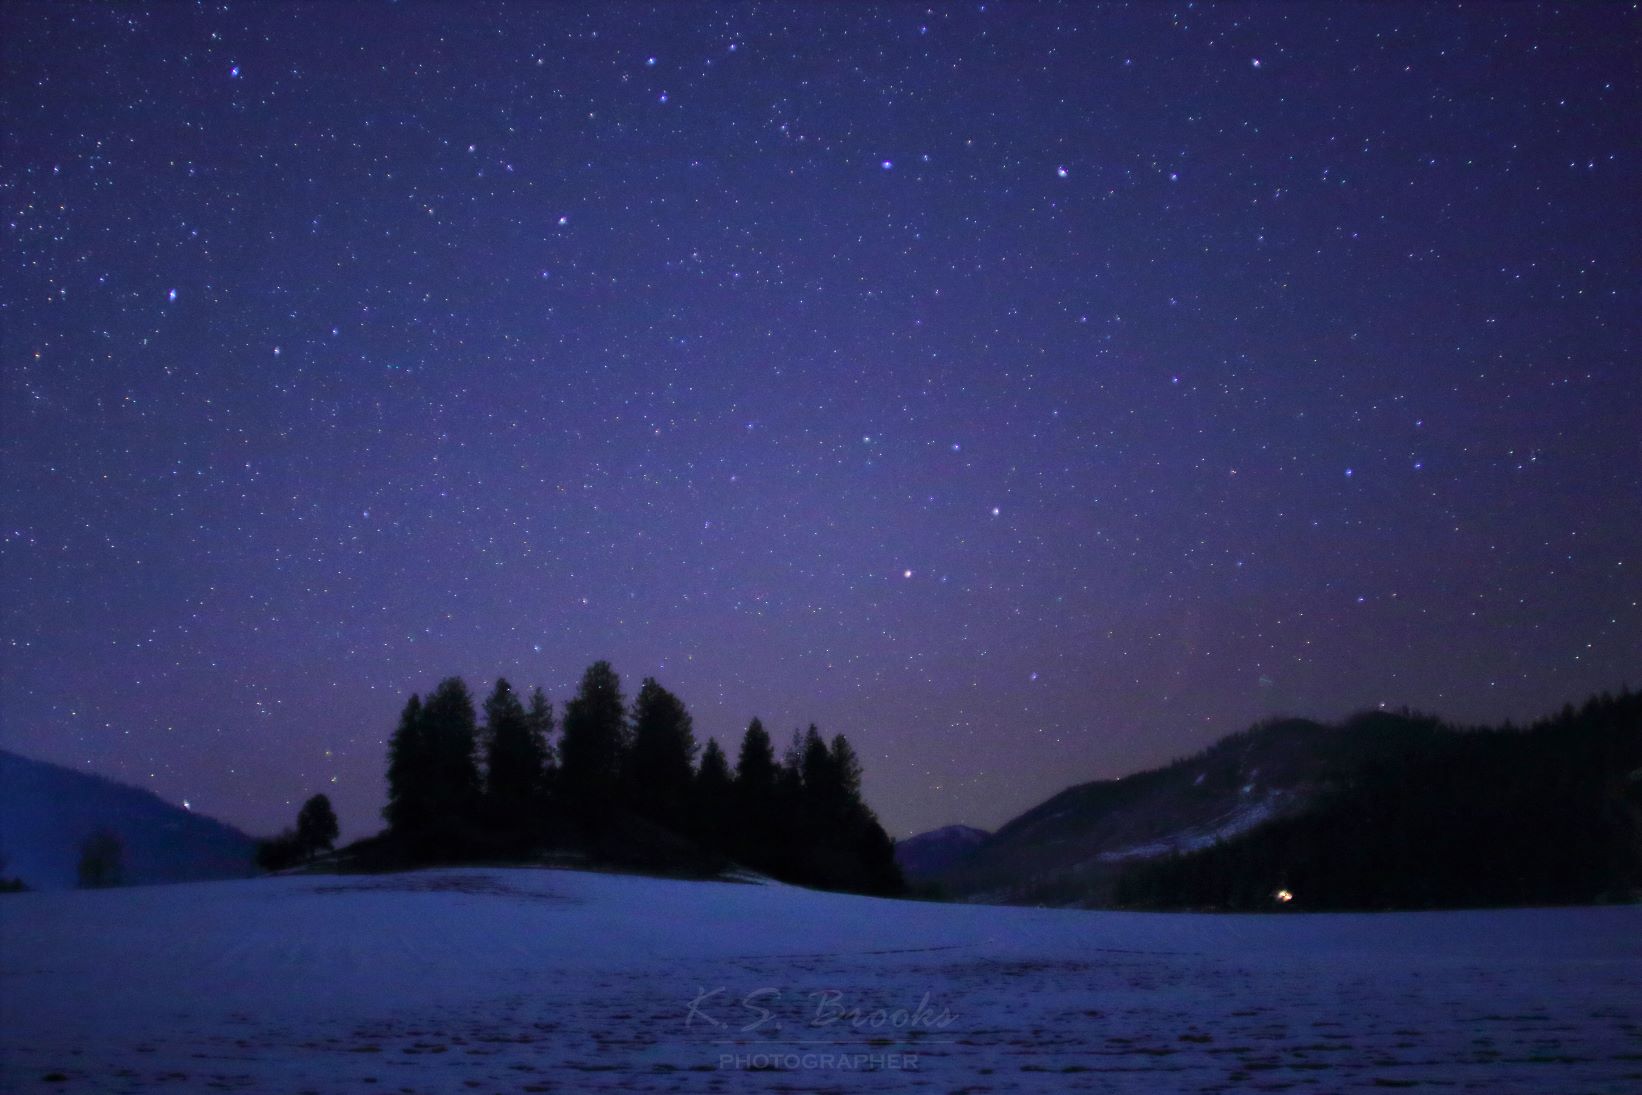 snow and night sky